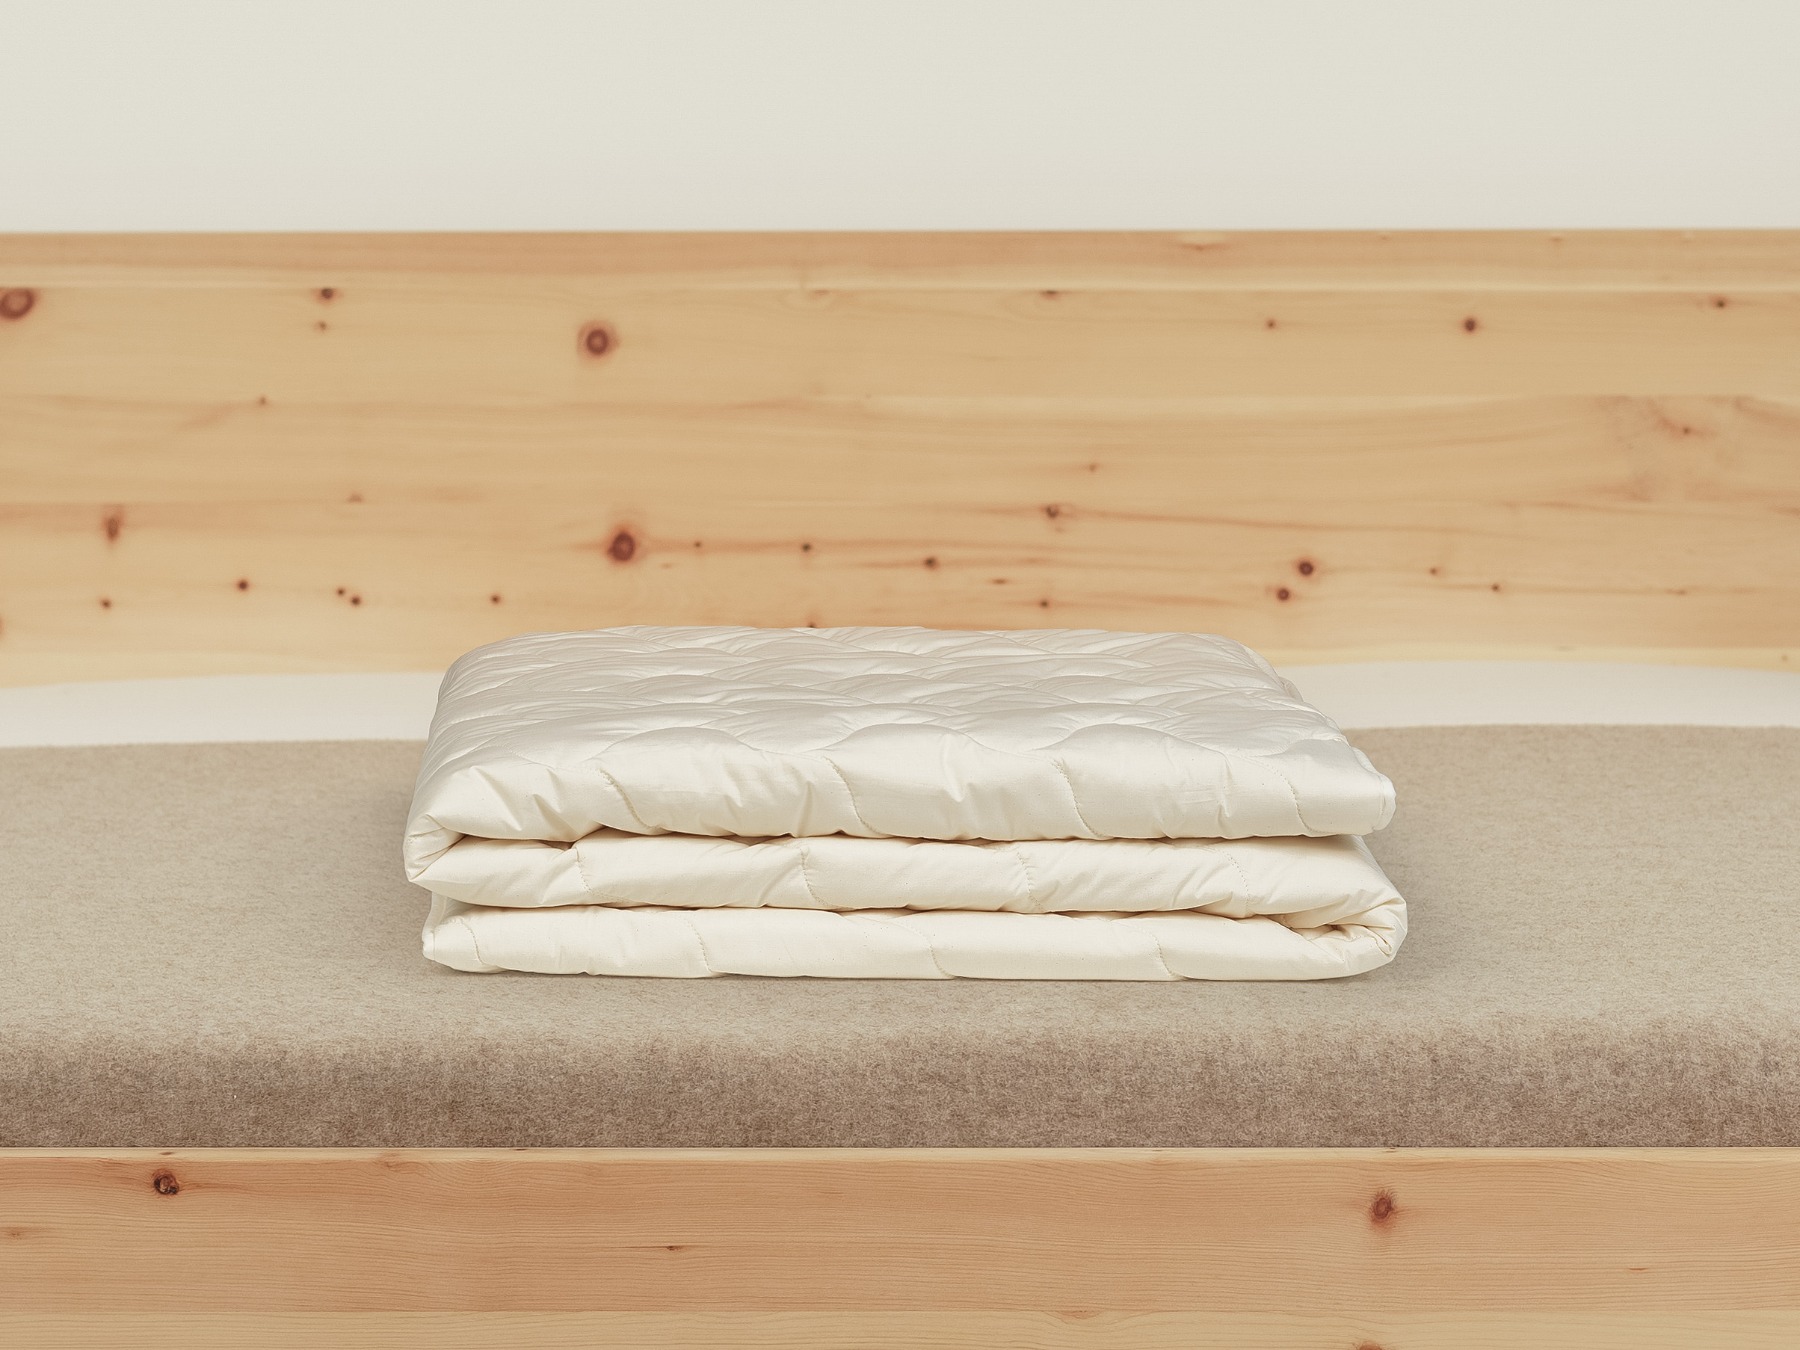 Die Duo-Bettdecke besteht aus zwei leichten Decken, die miteinander versteppt sind.